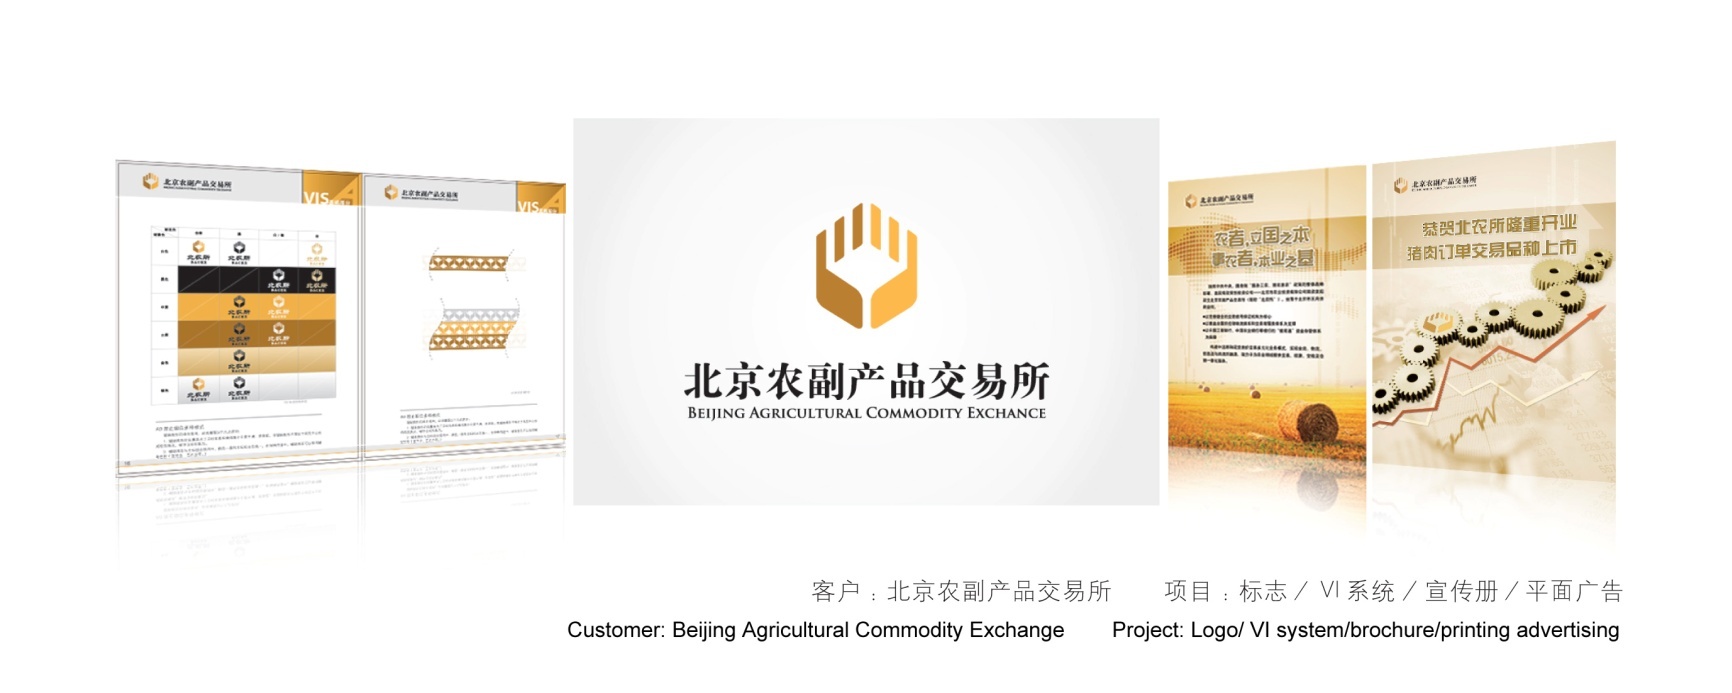 北京农副产品交易所/北京农业投资有限公司